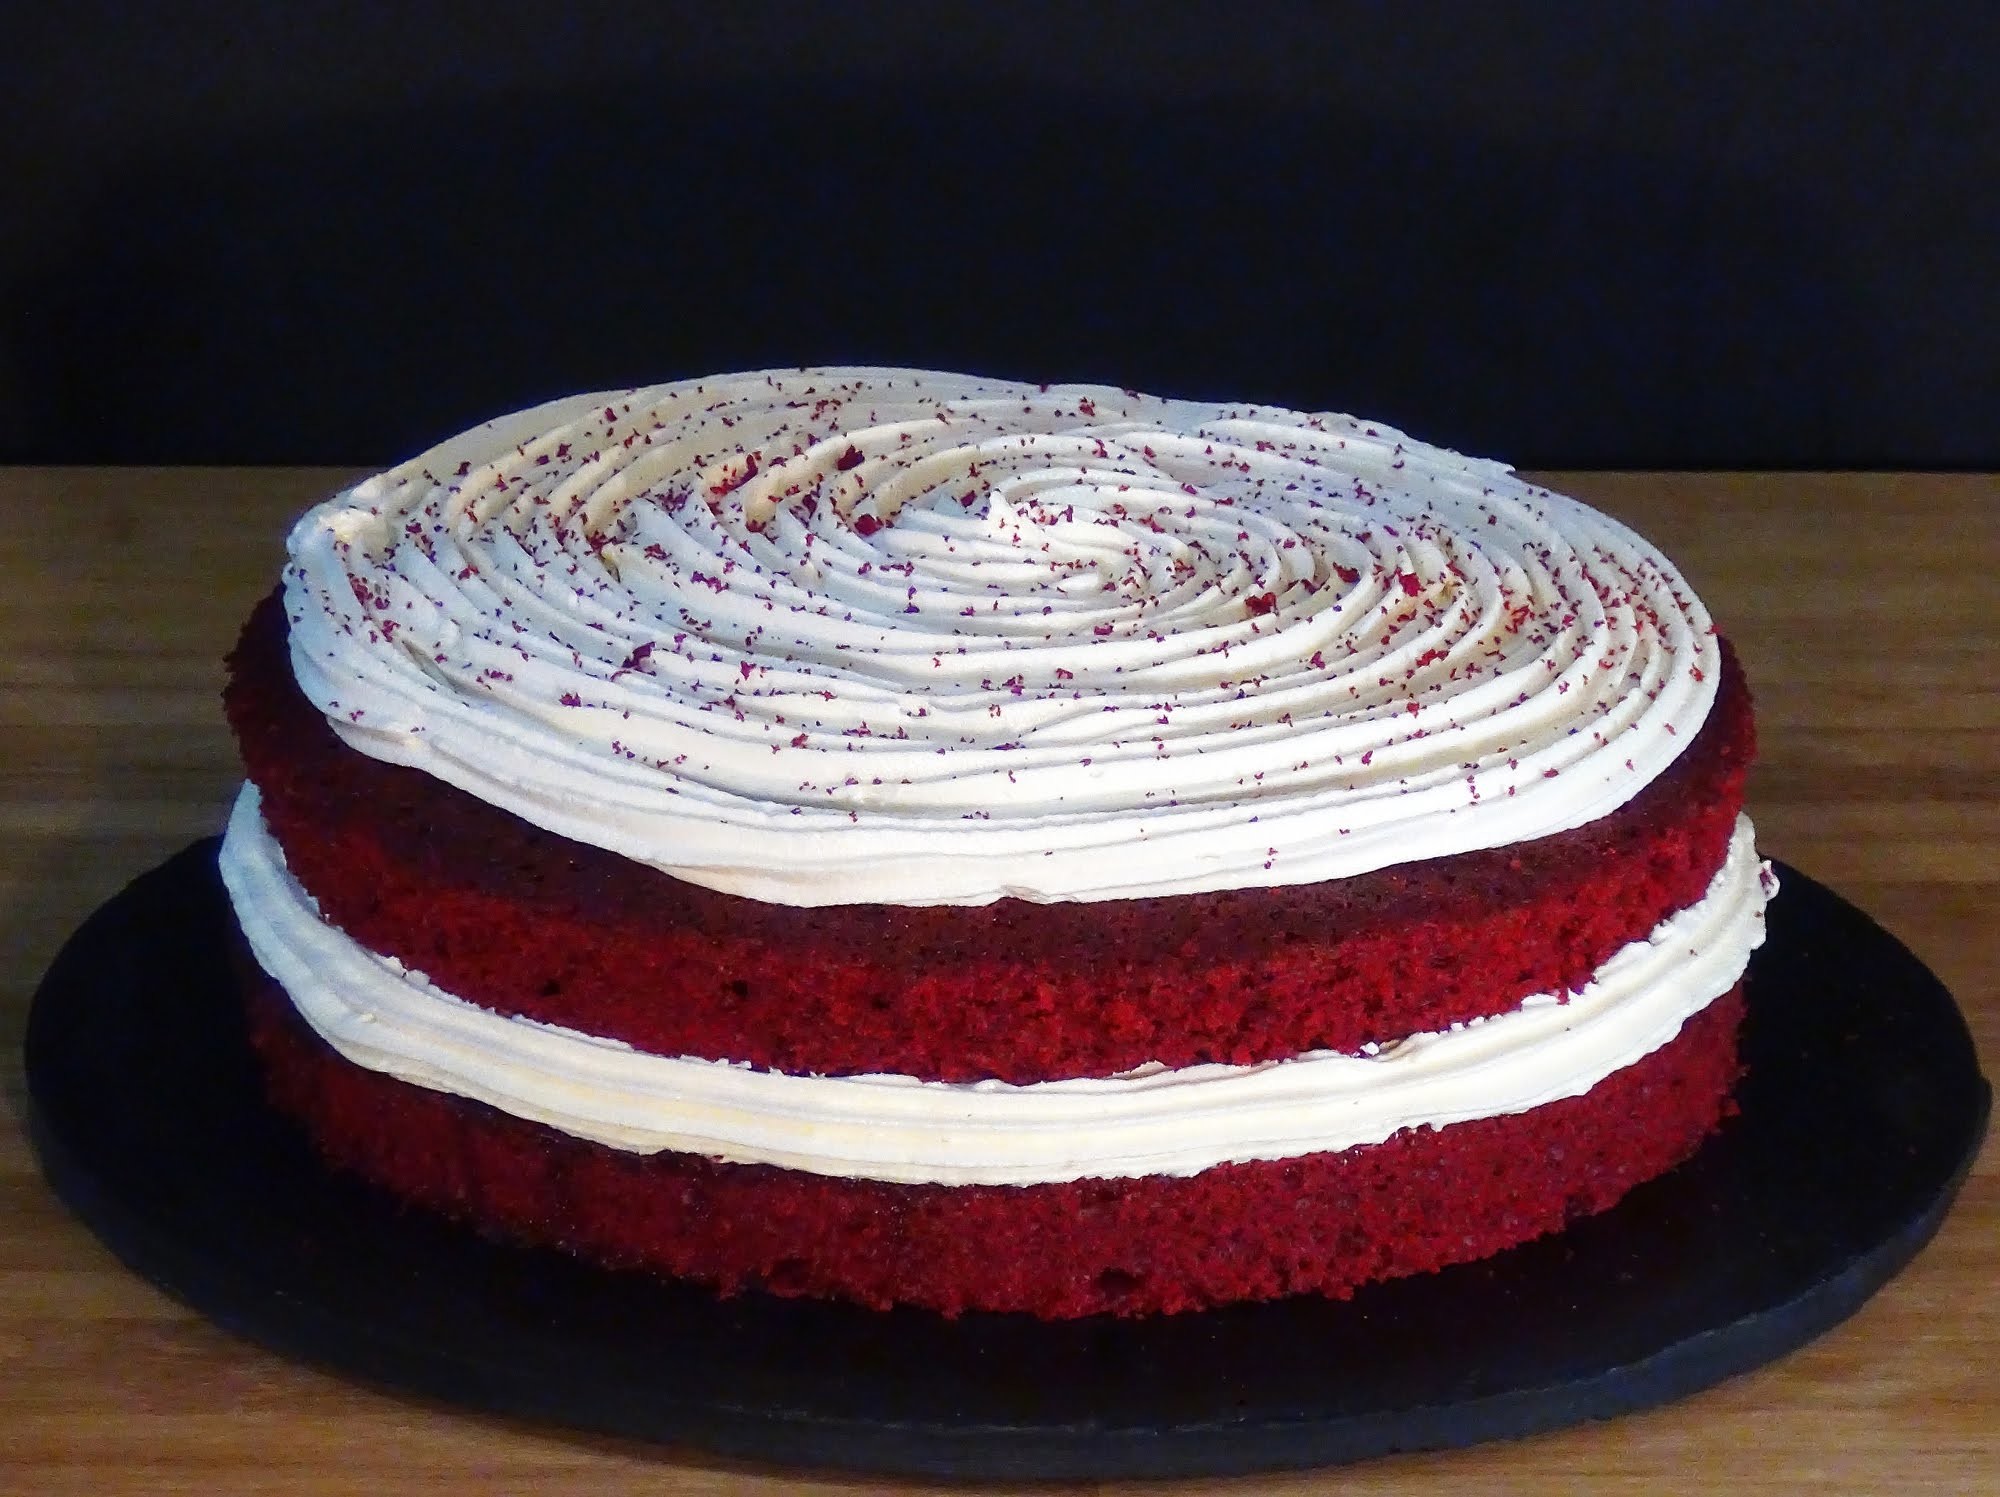 Receta Red velvet cake o Tarta terciopelo rojo - Recetas de cocina, paso a paso, tutorial